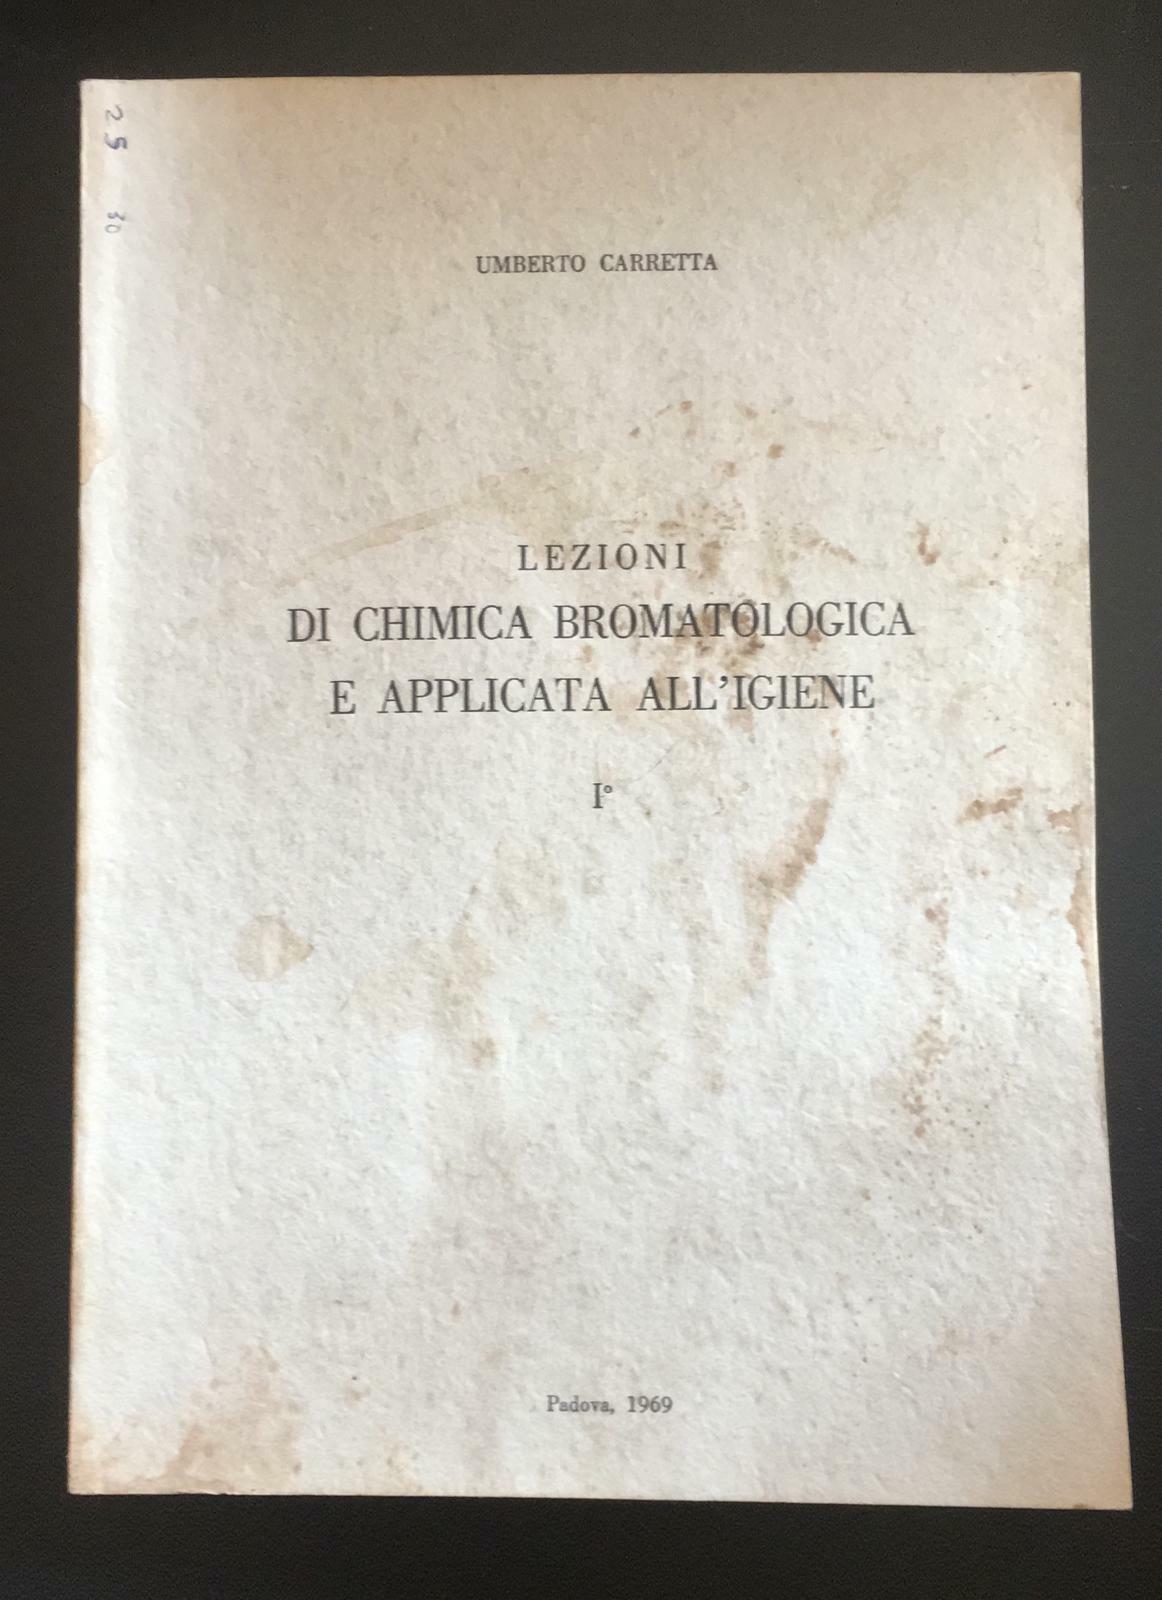 Lezioni di chimica bromatologica e applicata alL'igiene - Umberto Carretta - P